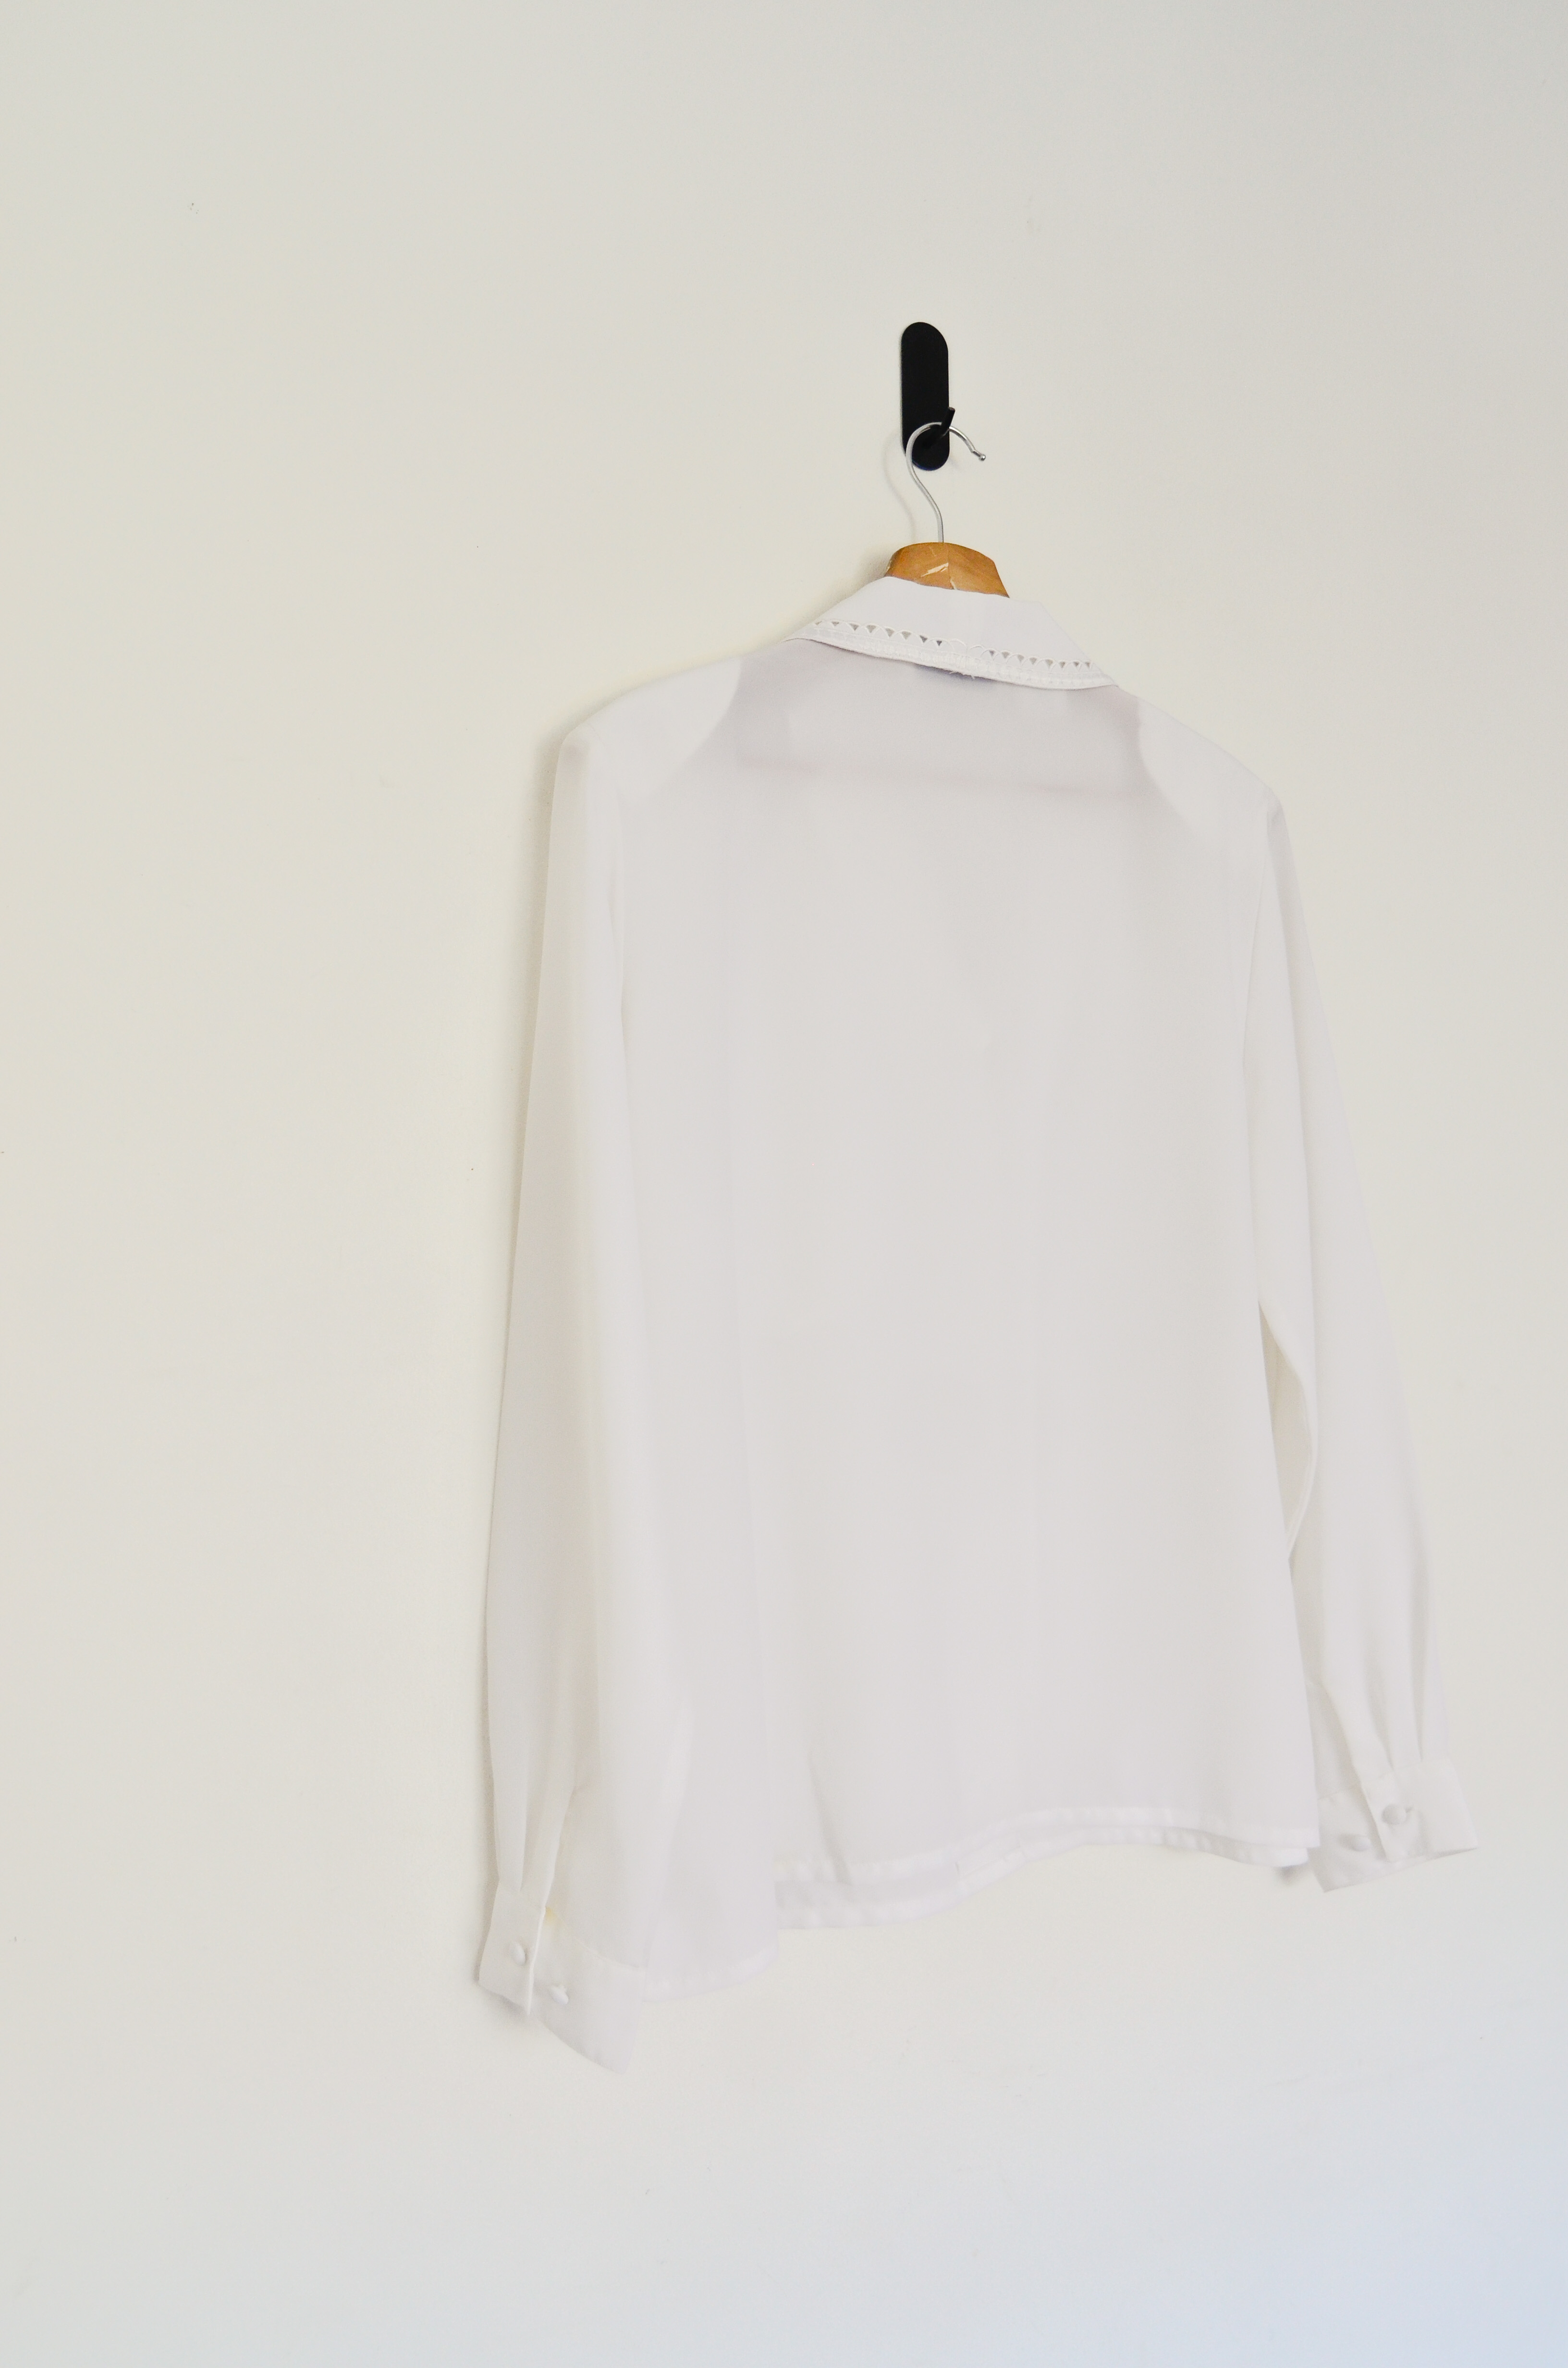 Blusa blanca cuello bordado vintage